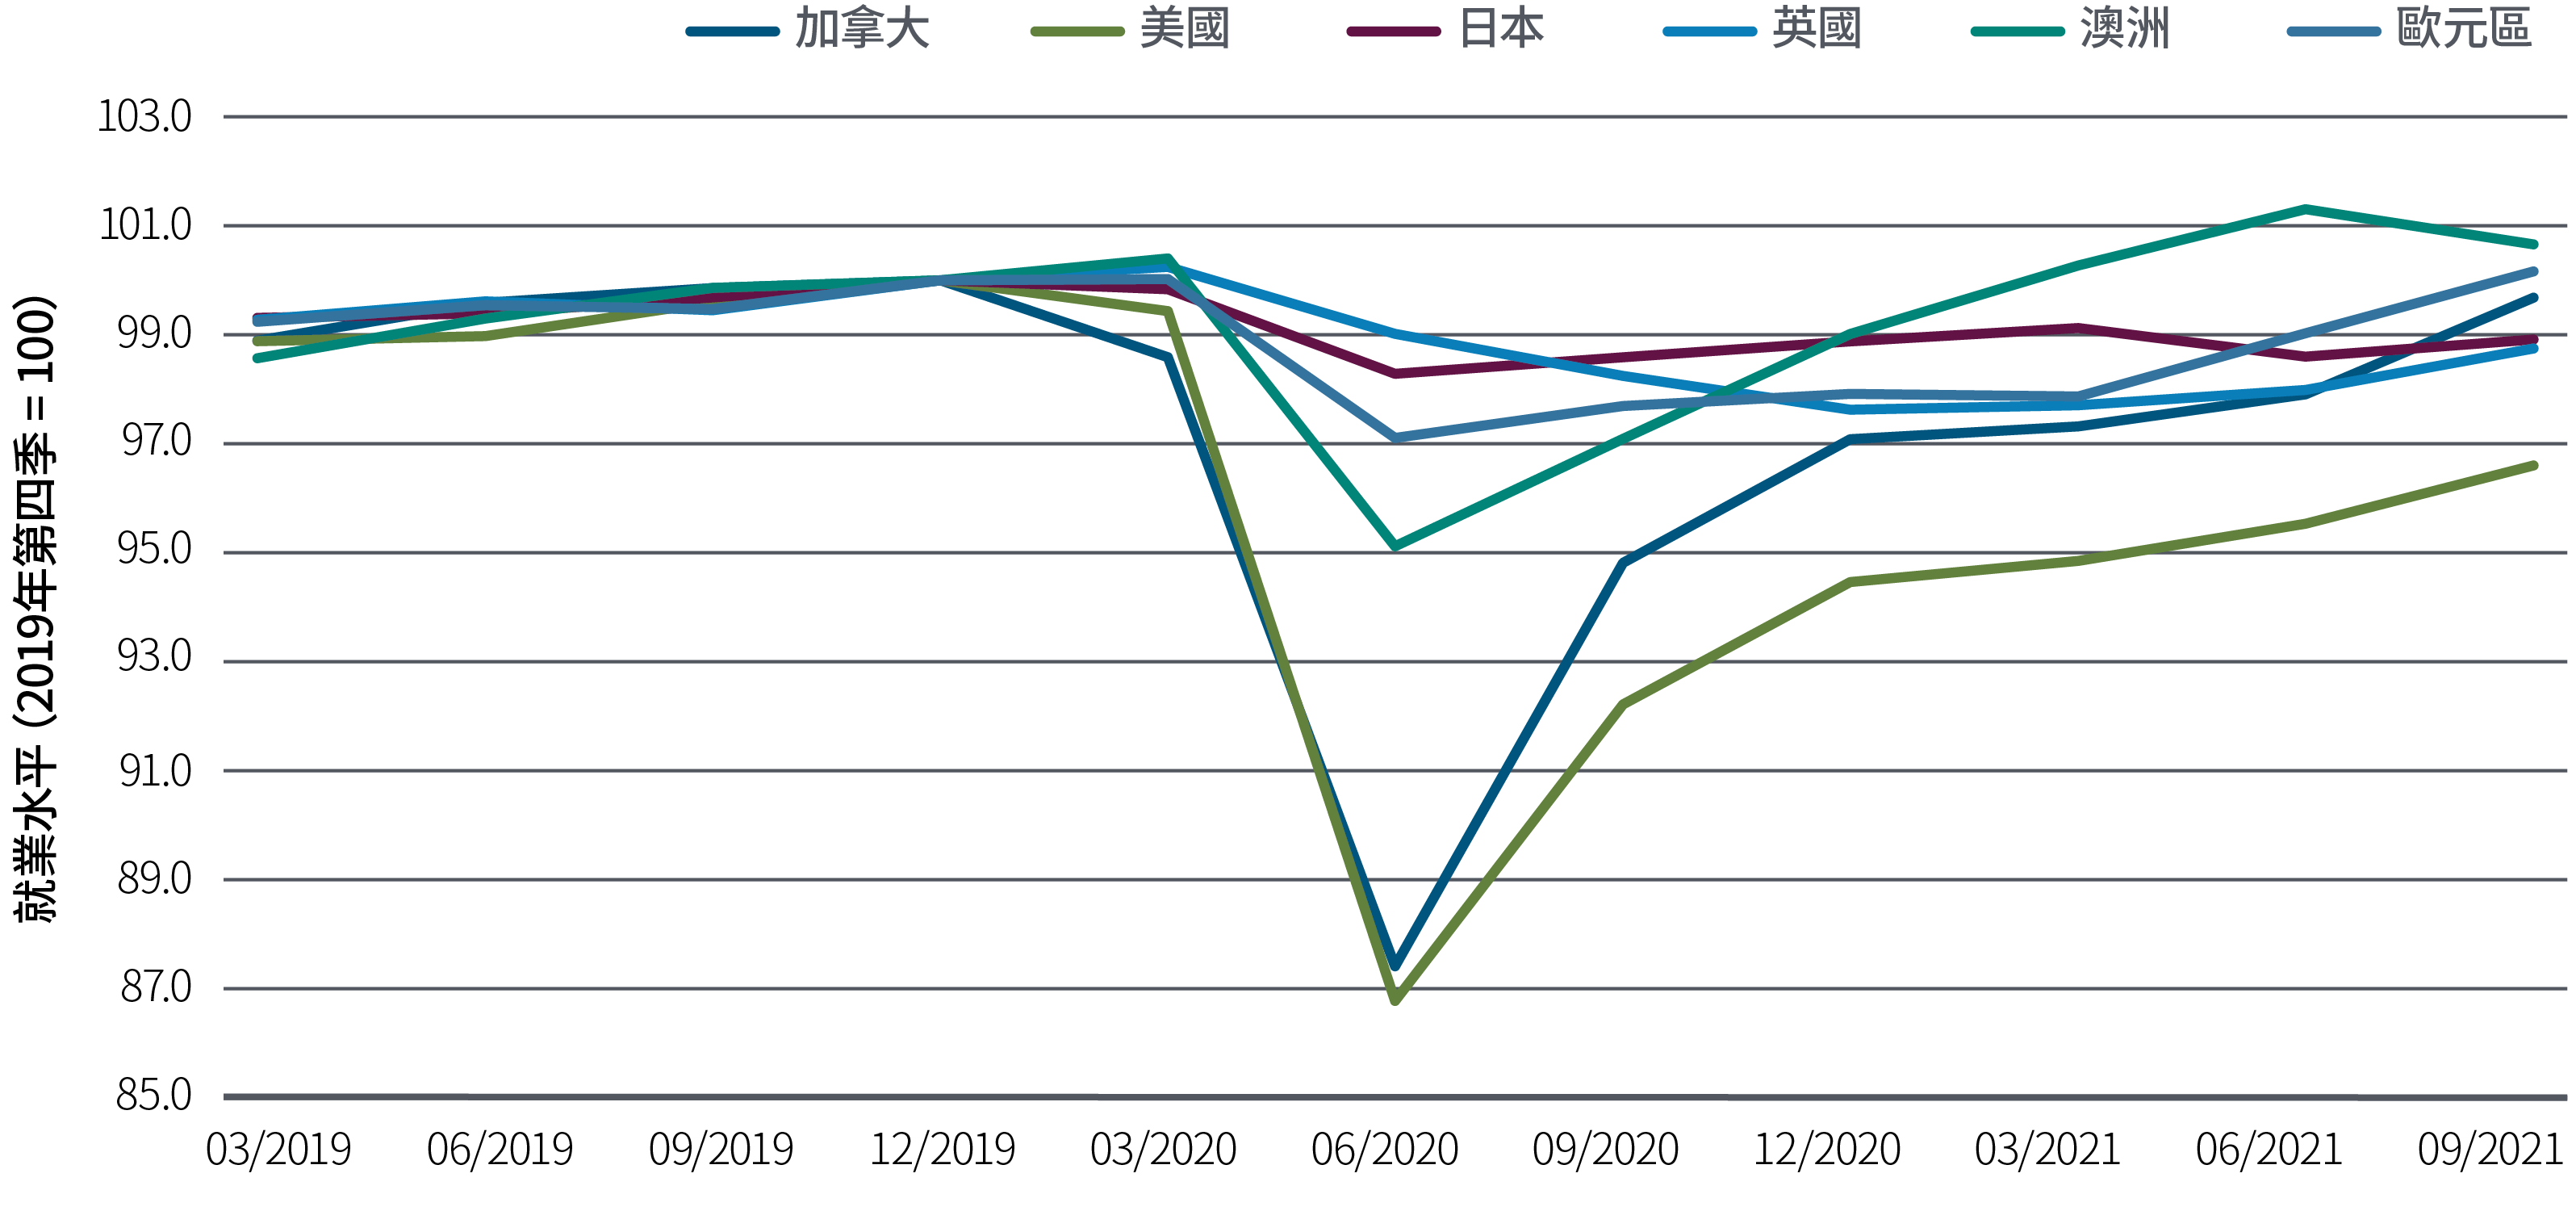 圖4以折線圖顯示六個主要已發展經濟體在疫情前後的就業水平趨勢，以2019年第四季為100作指數化處理。美國就業水平在2020年第二季跌至87，為歷來最大跌幅，其後在2021年第三季回升至約97。四大歐元區國家的就業水平跌幅較小，到2021年第三季已回升至100。疫情期間，日本和英國的就業水平變化較小。